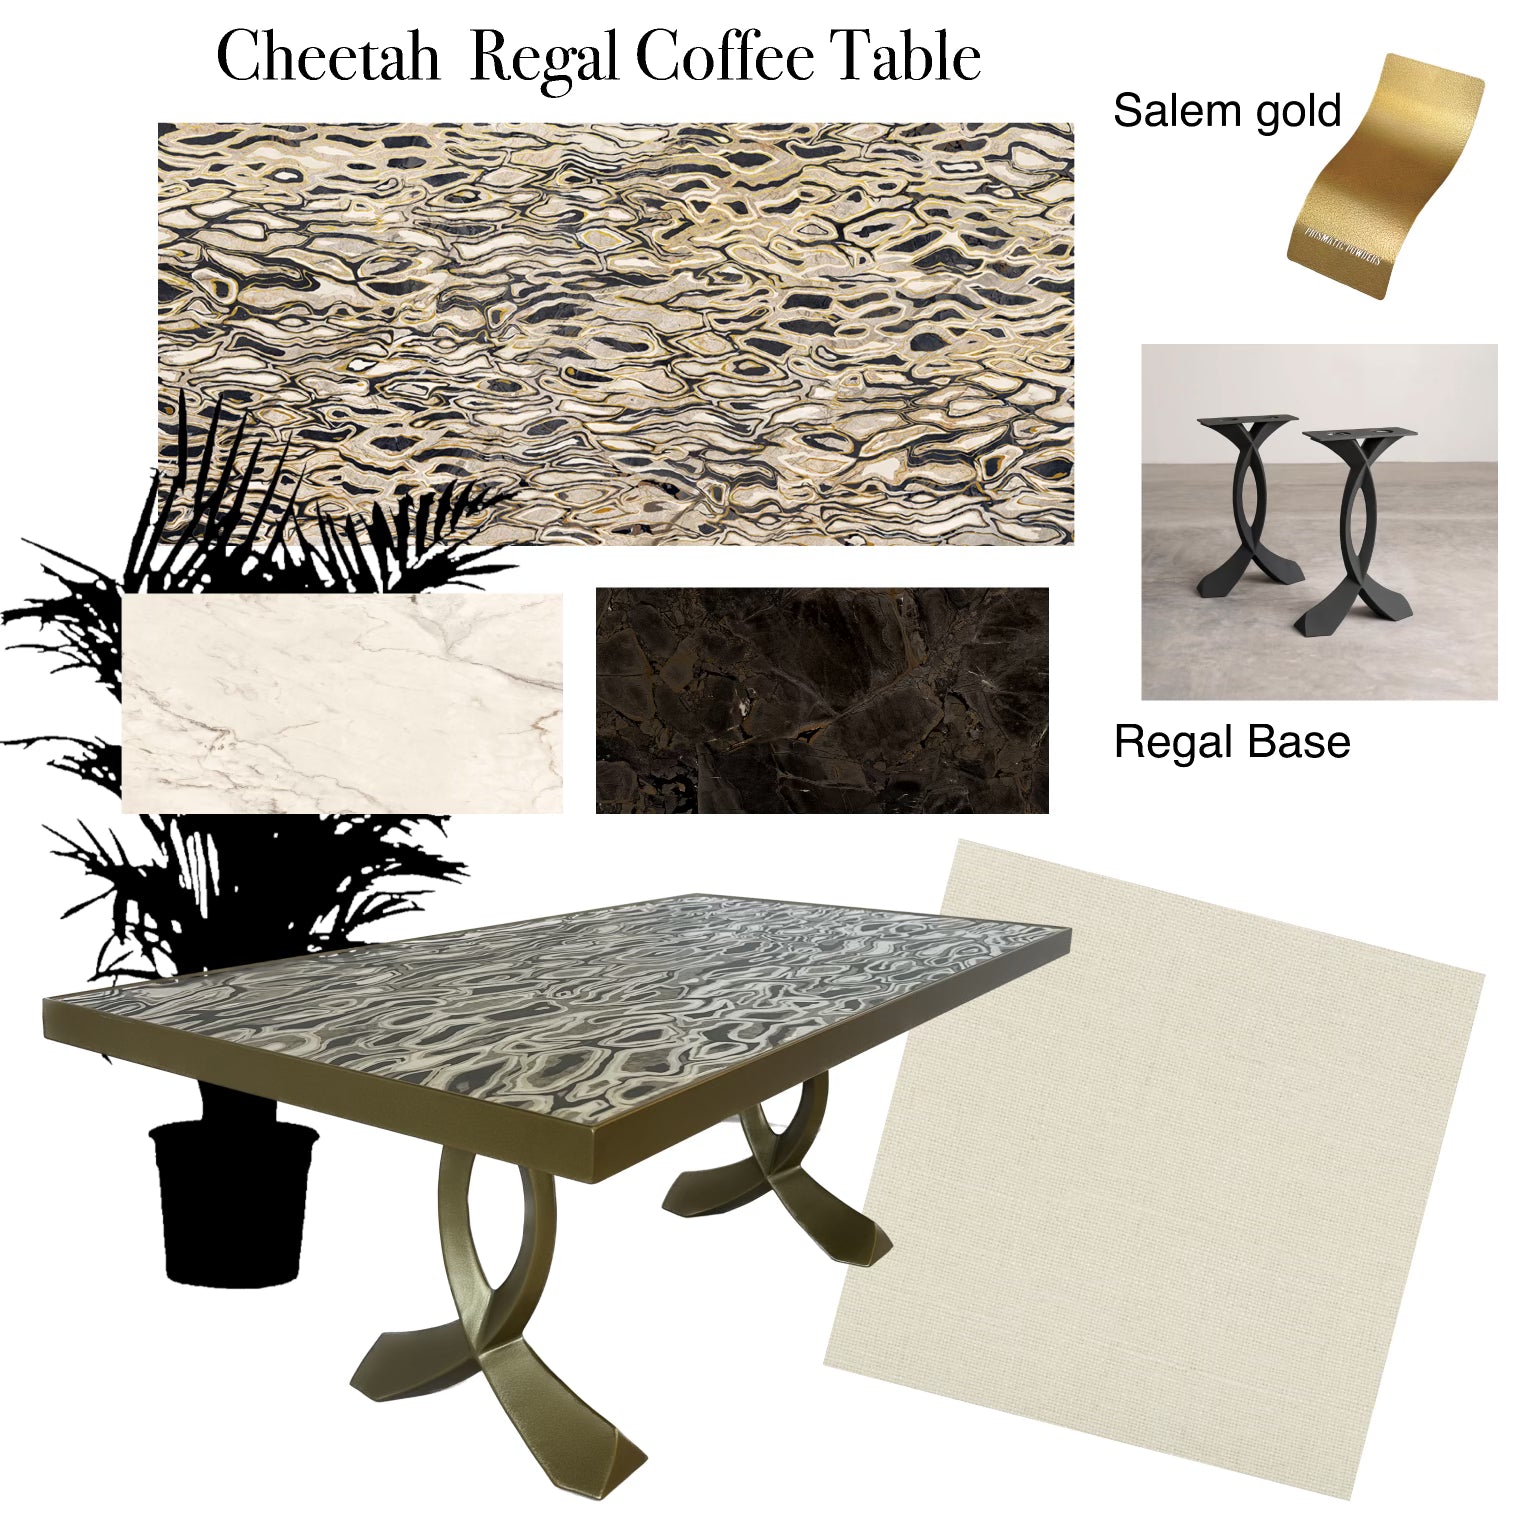 The Cheetah Regal Coffee Table